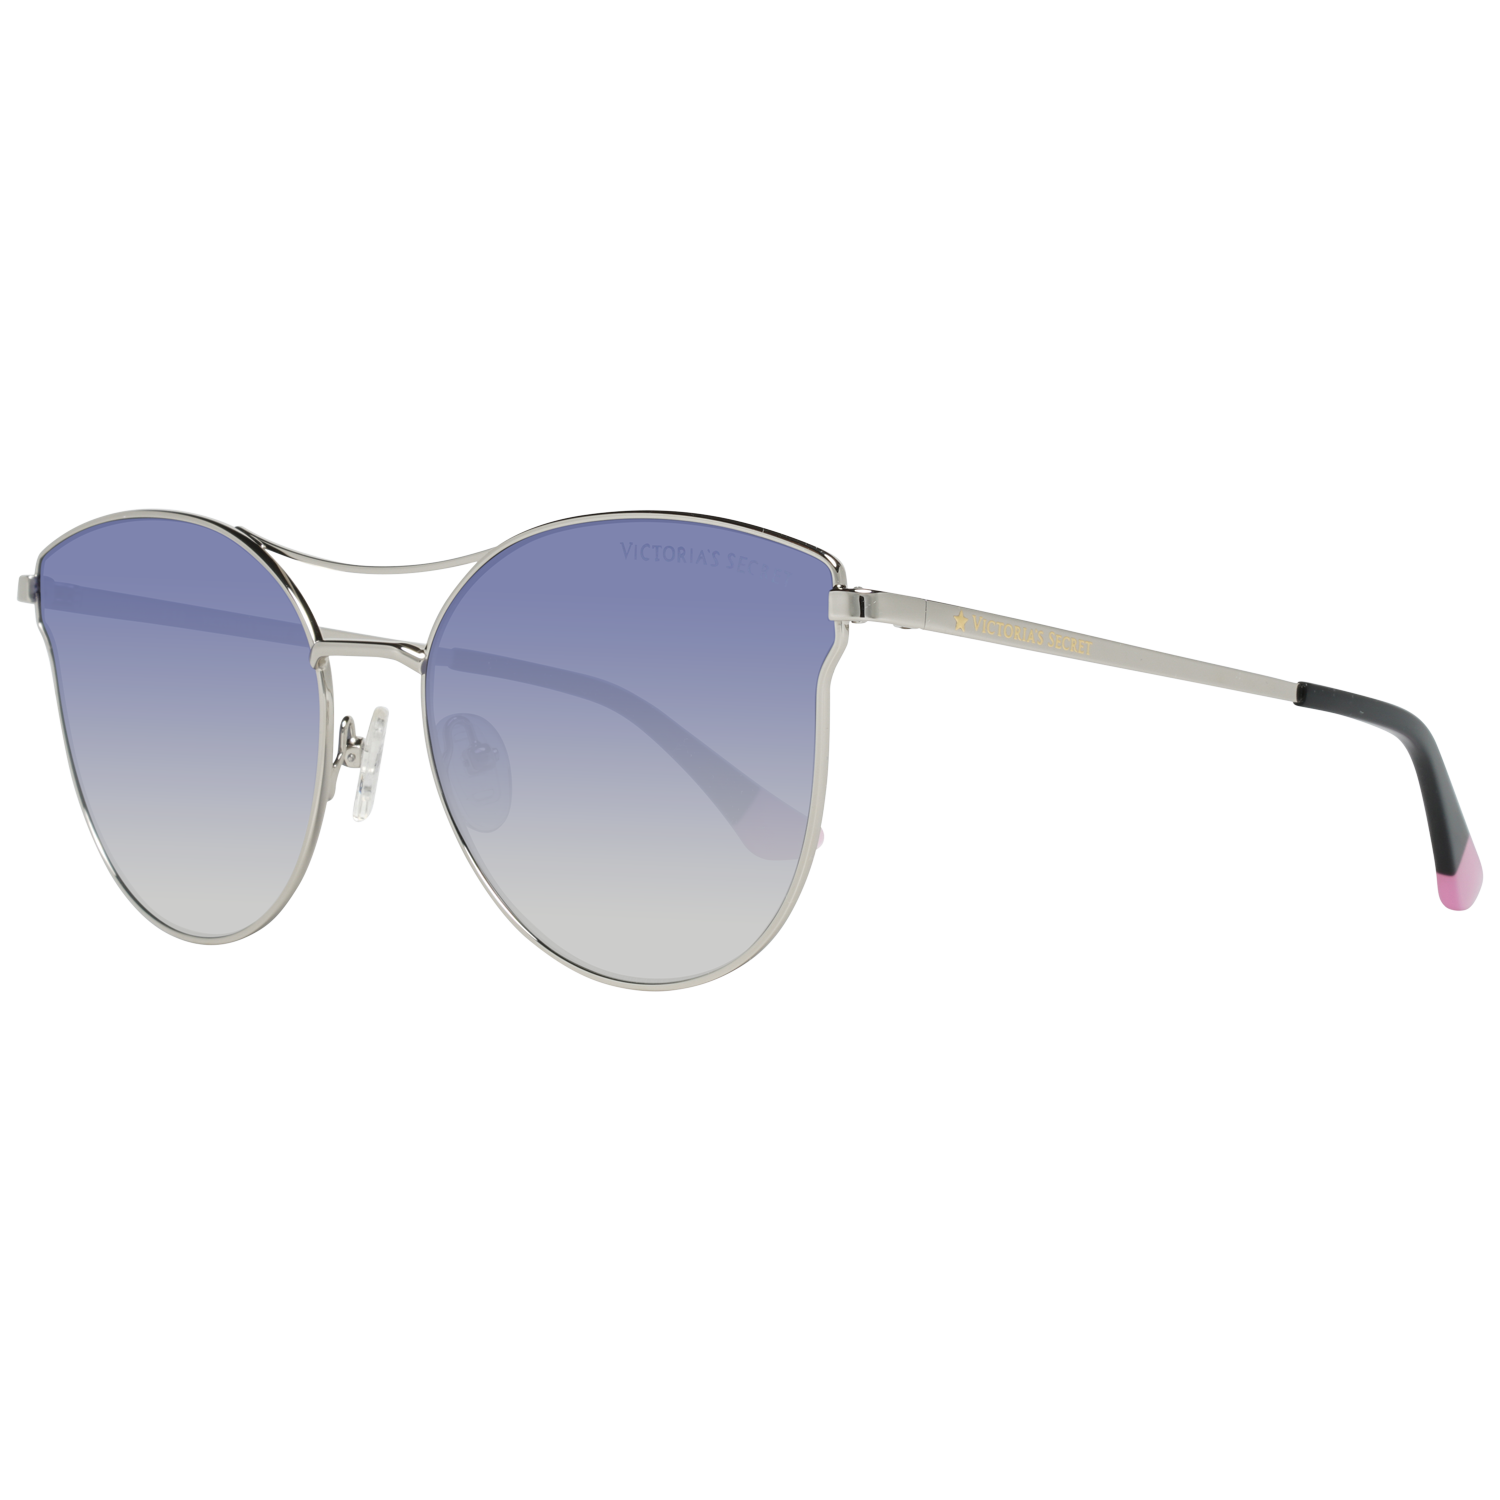 Victoria's Secret Sunglasses VS0050 16W 60 Silver